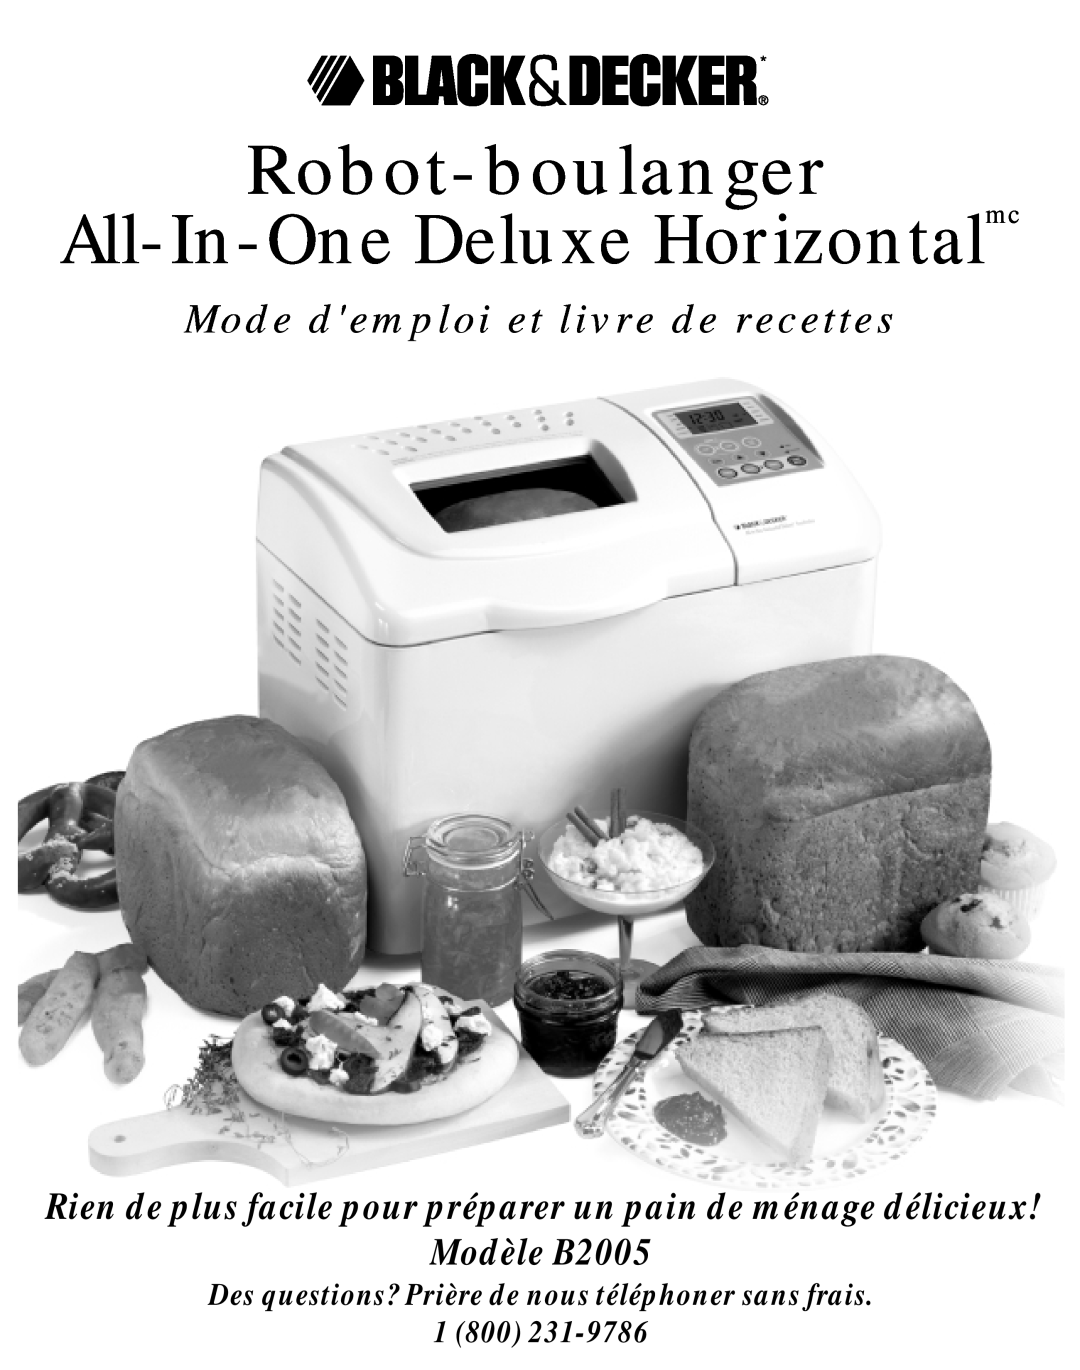 Black & Decker manual Robot-boulanger All-In-One Deluxe Horizontalmc, Mode demploi et livre de recettes, Modèle B2005 